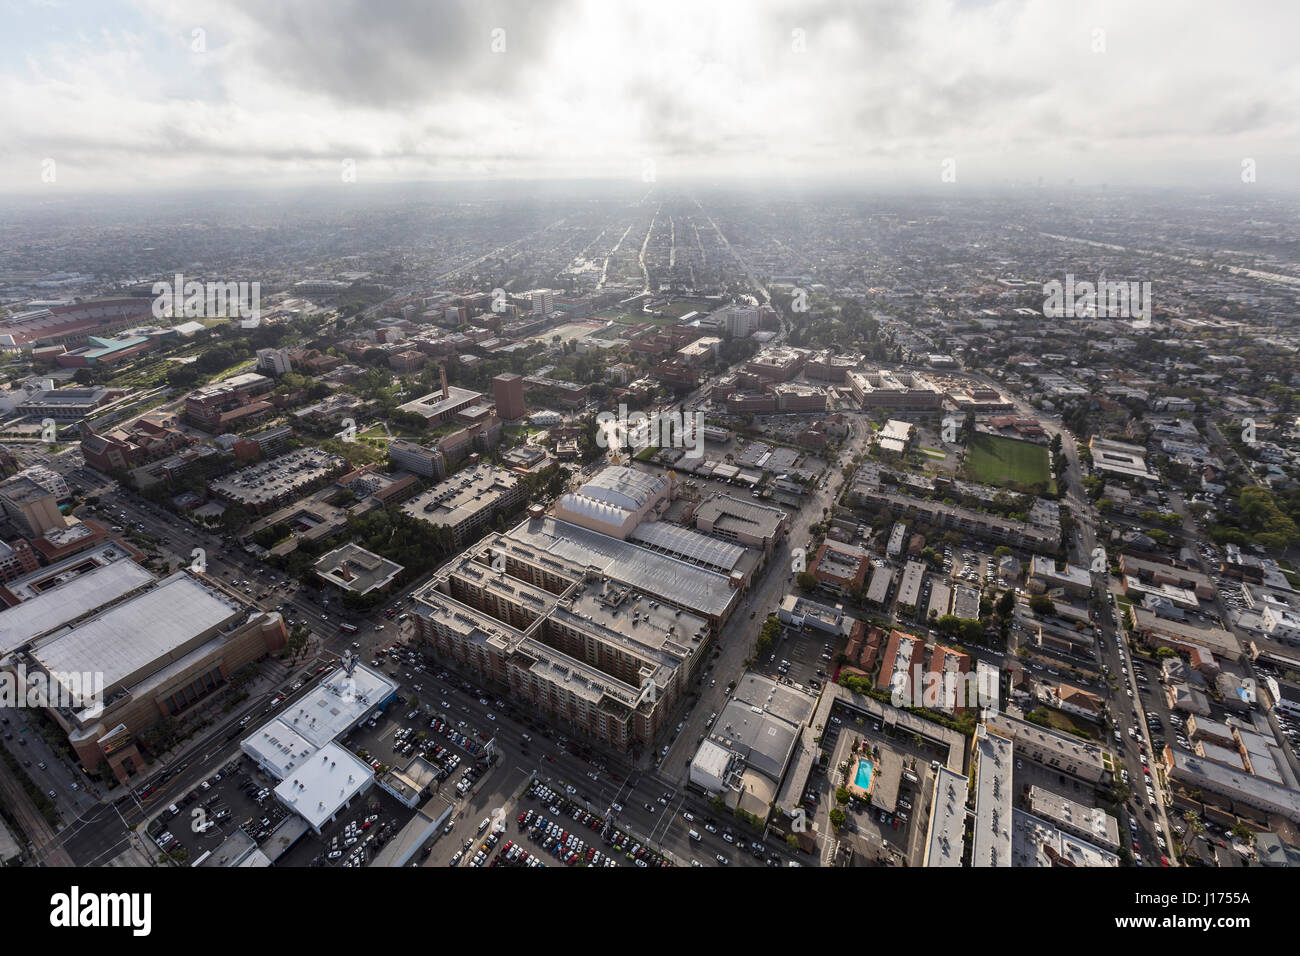 Los Angeles, Kalifornien, USA - 12. April 2017: Am Nachmittag Luftaufnahme des Campus der University of Southern California und den nahe gelegenen Viertel. Stockfoto